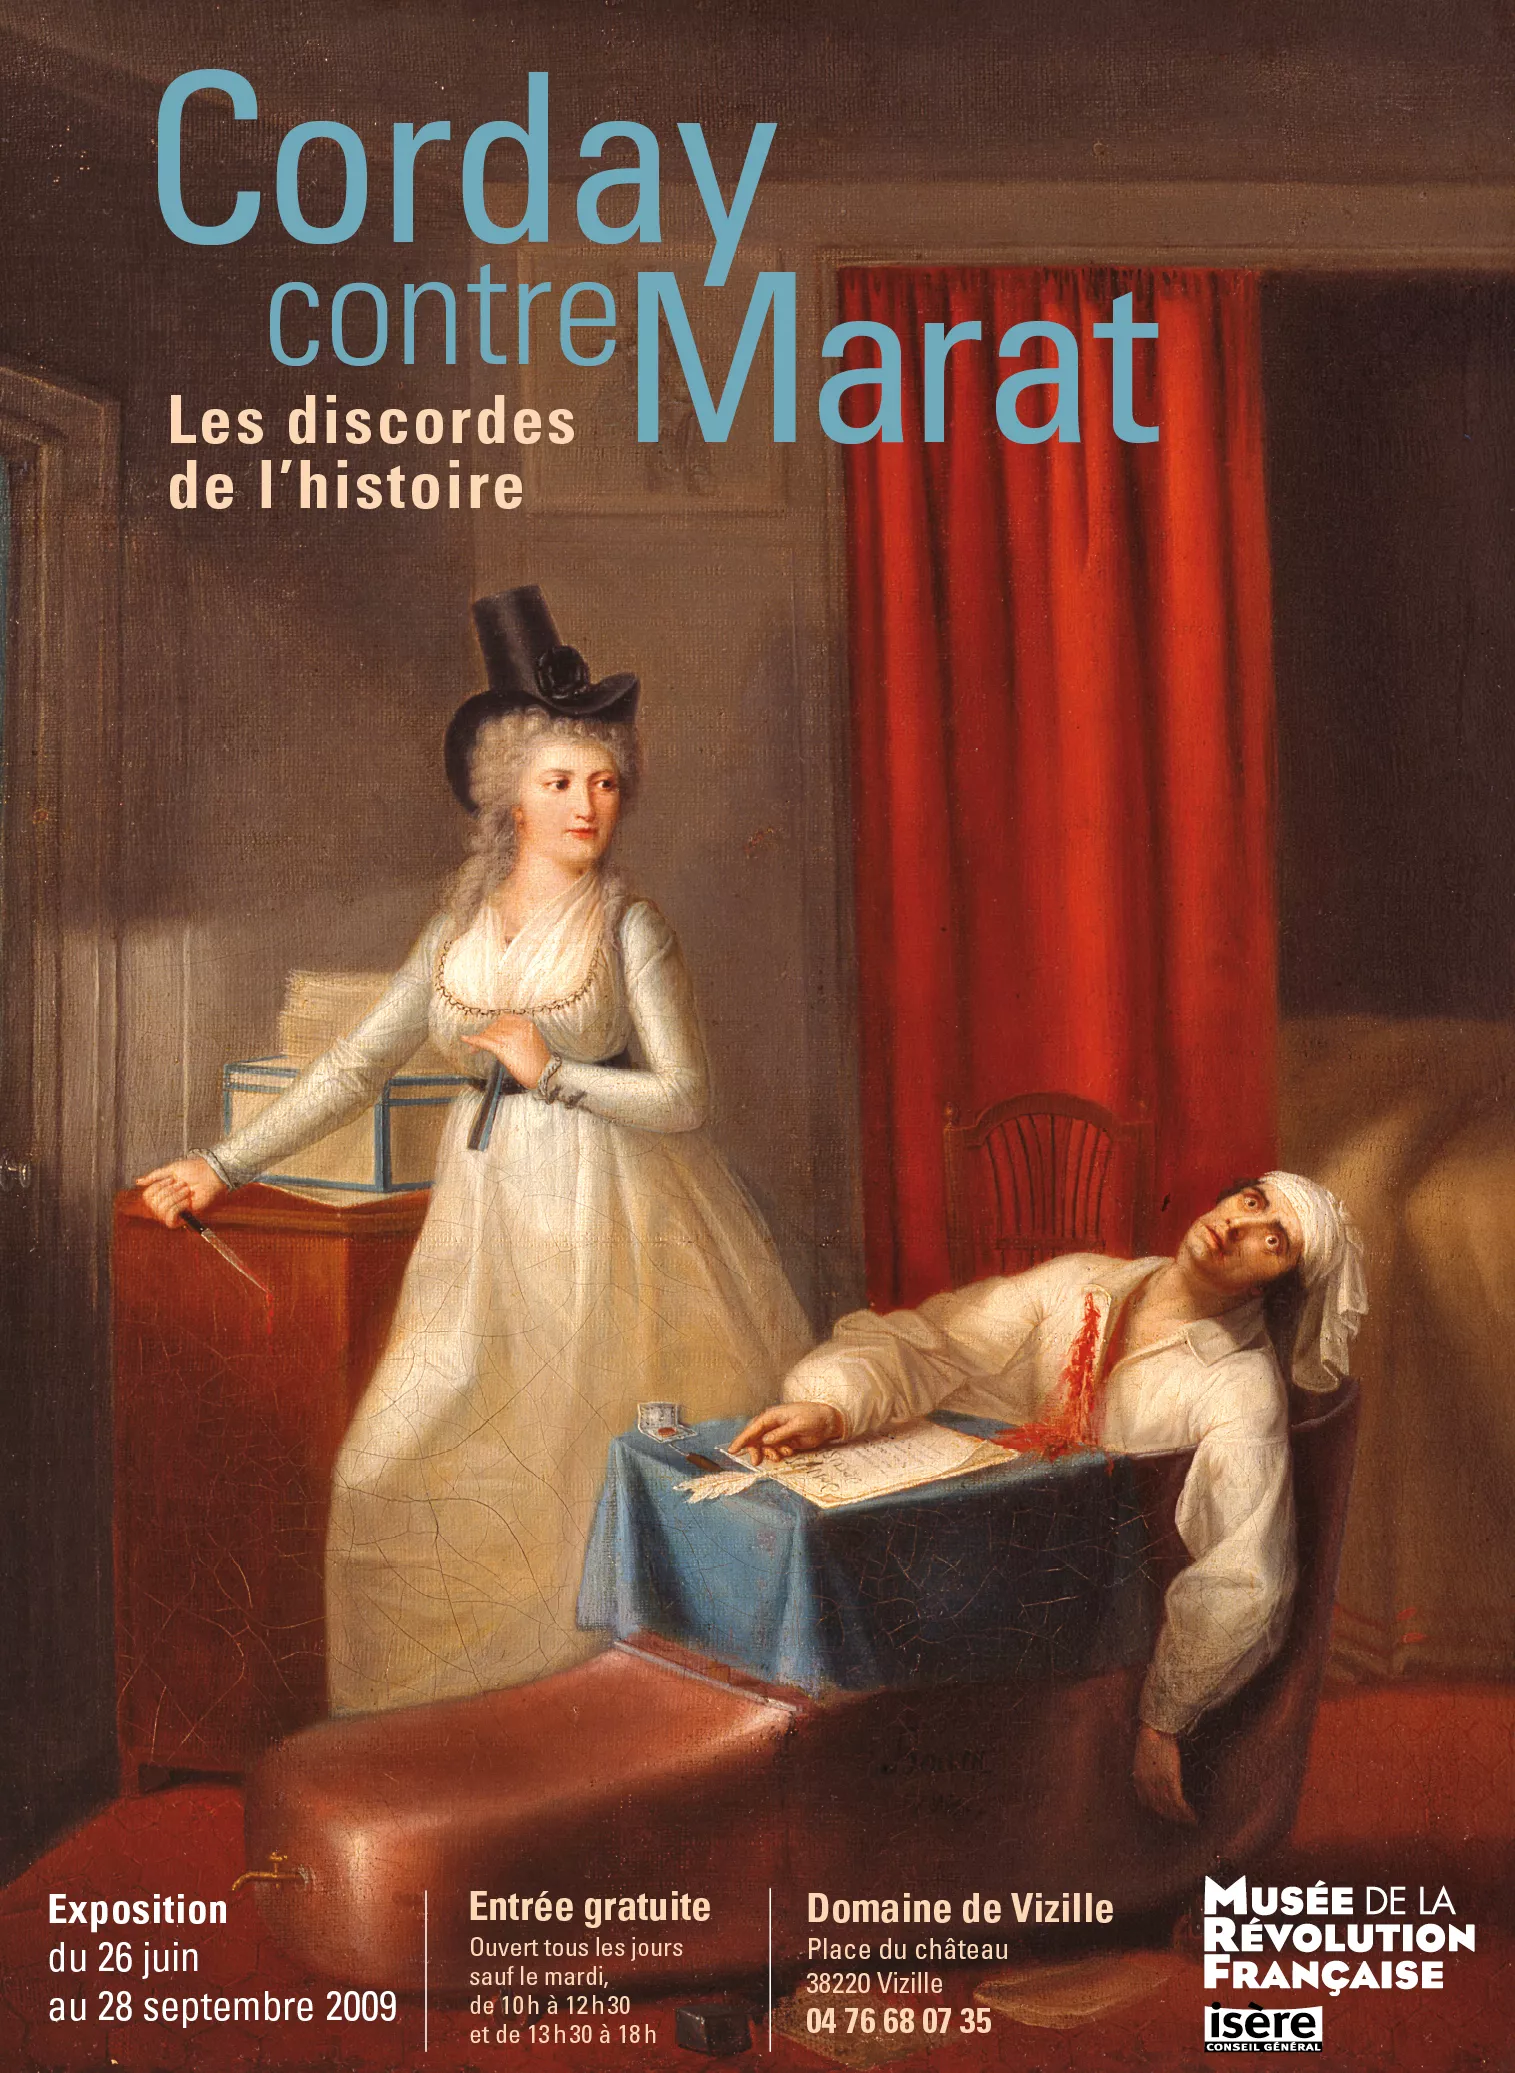 Affiche "Corday contre Marat" © Domaine de Vizille - Musée de la Révolution française / Département de l'Isère